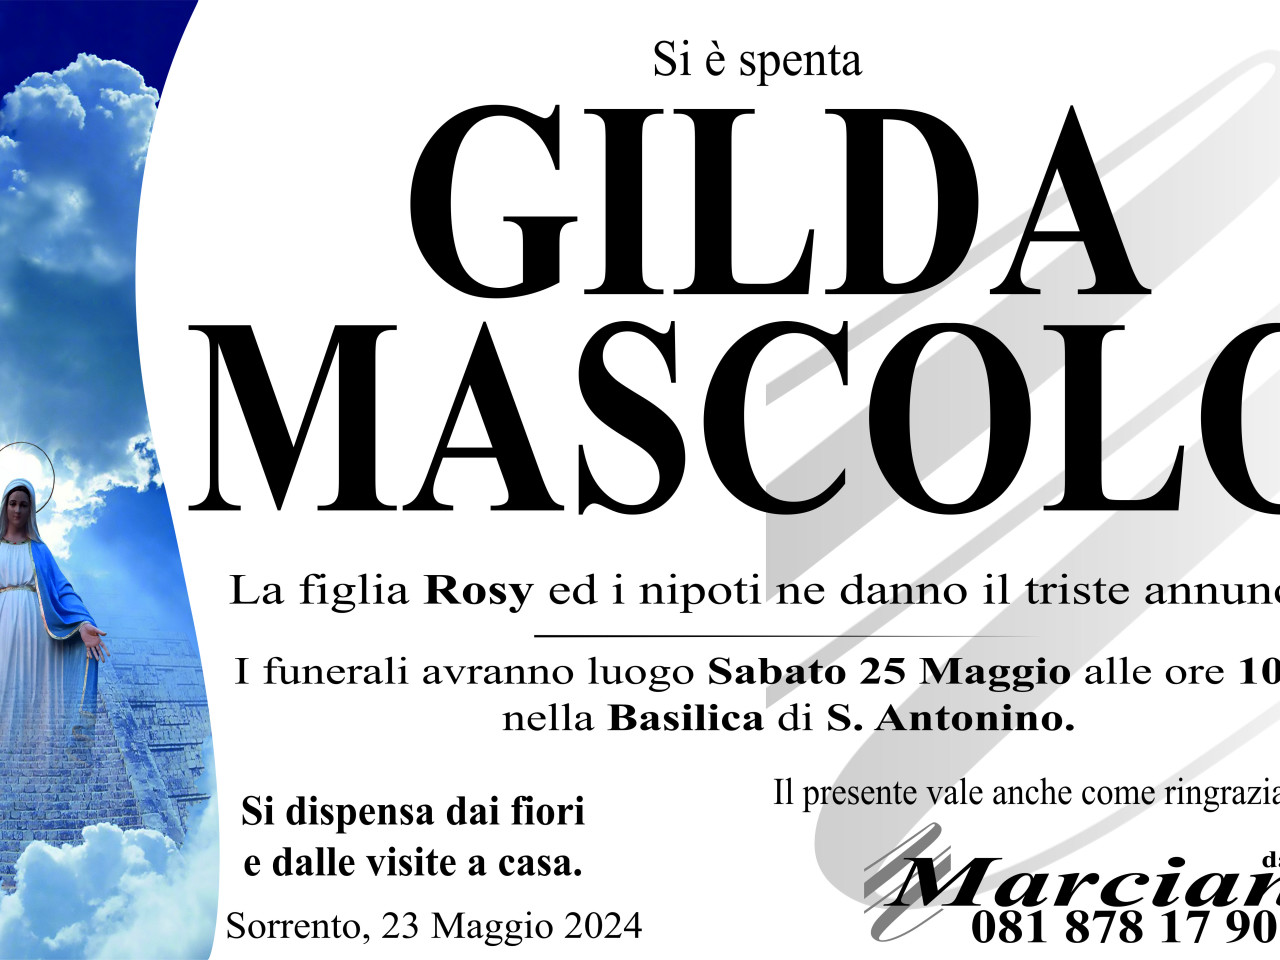 Gilda Mascolo